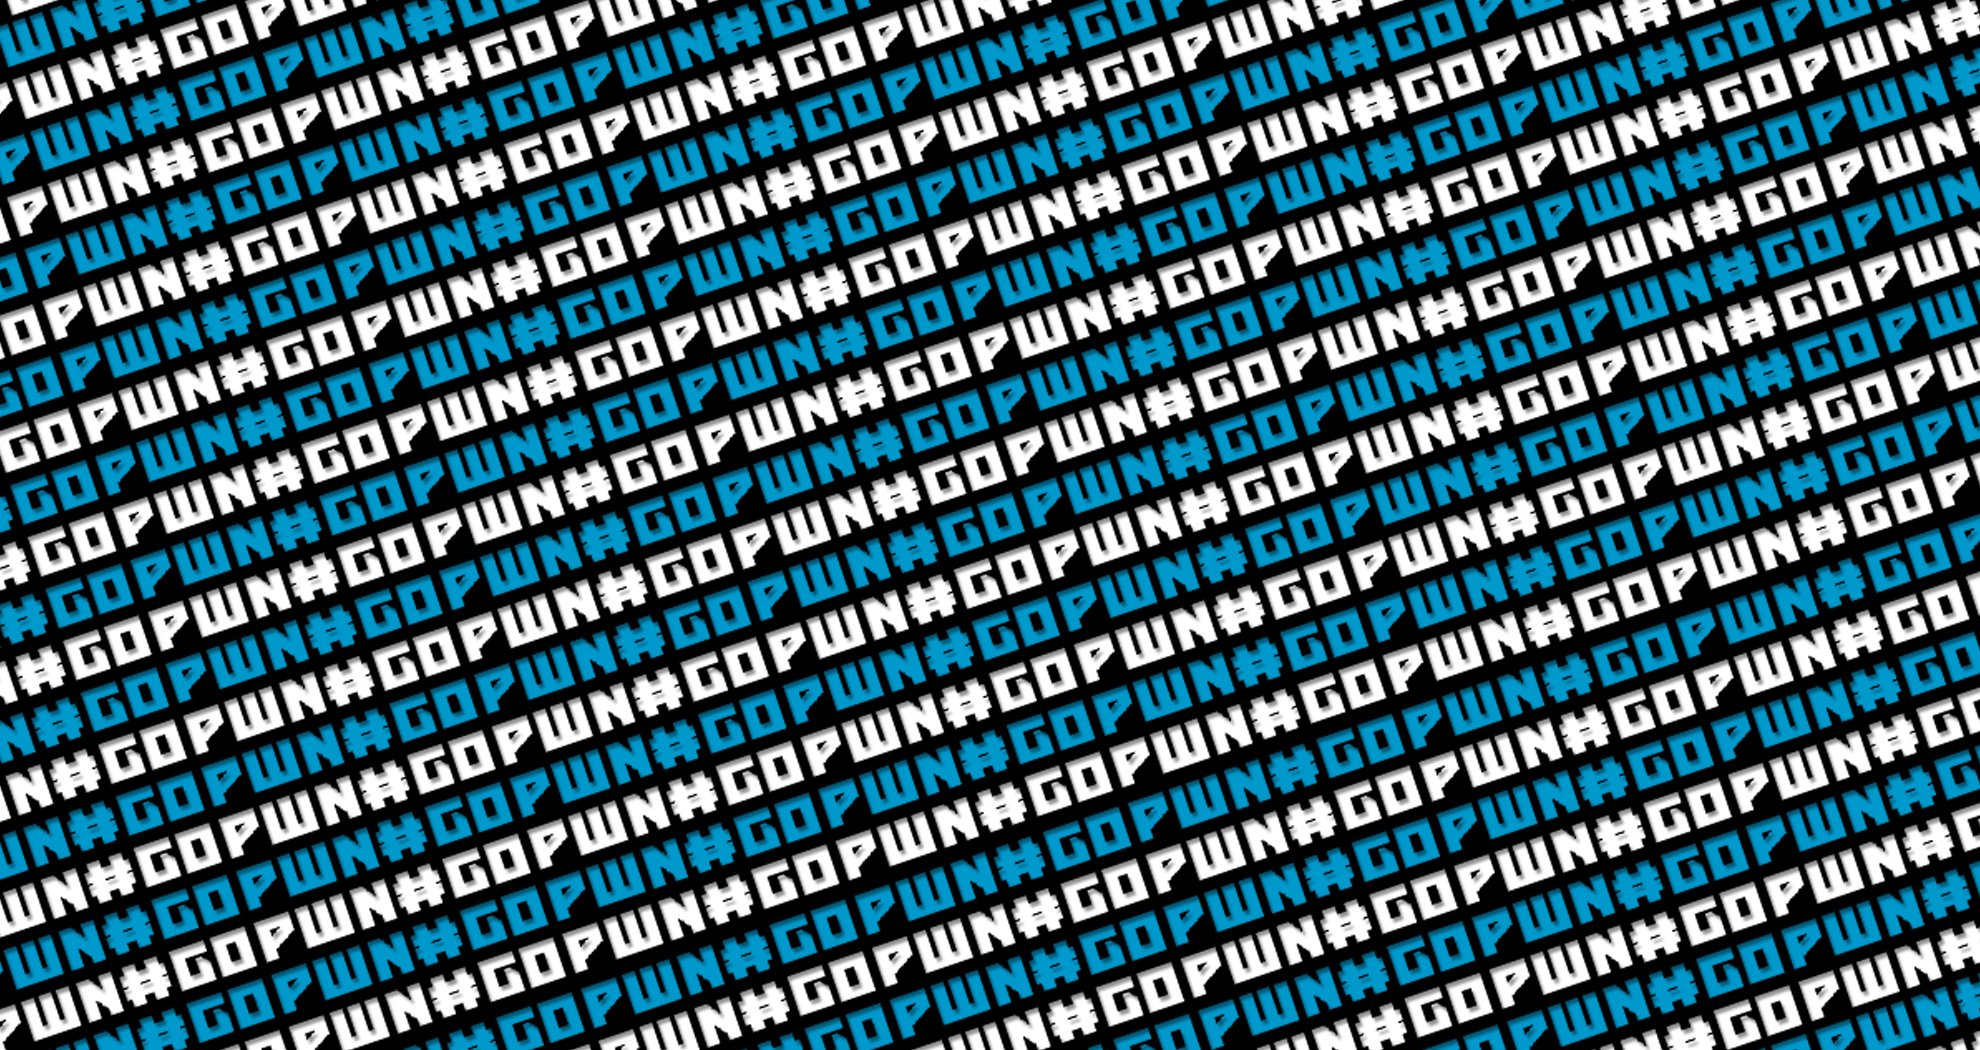 pwn, Gogo Wallpaper